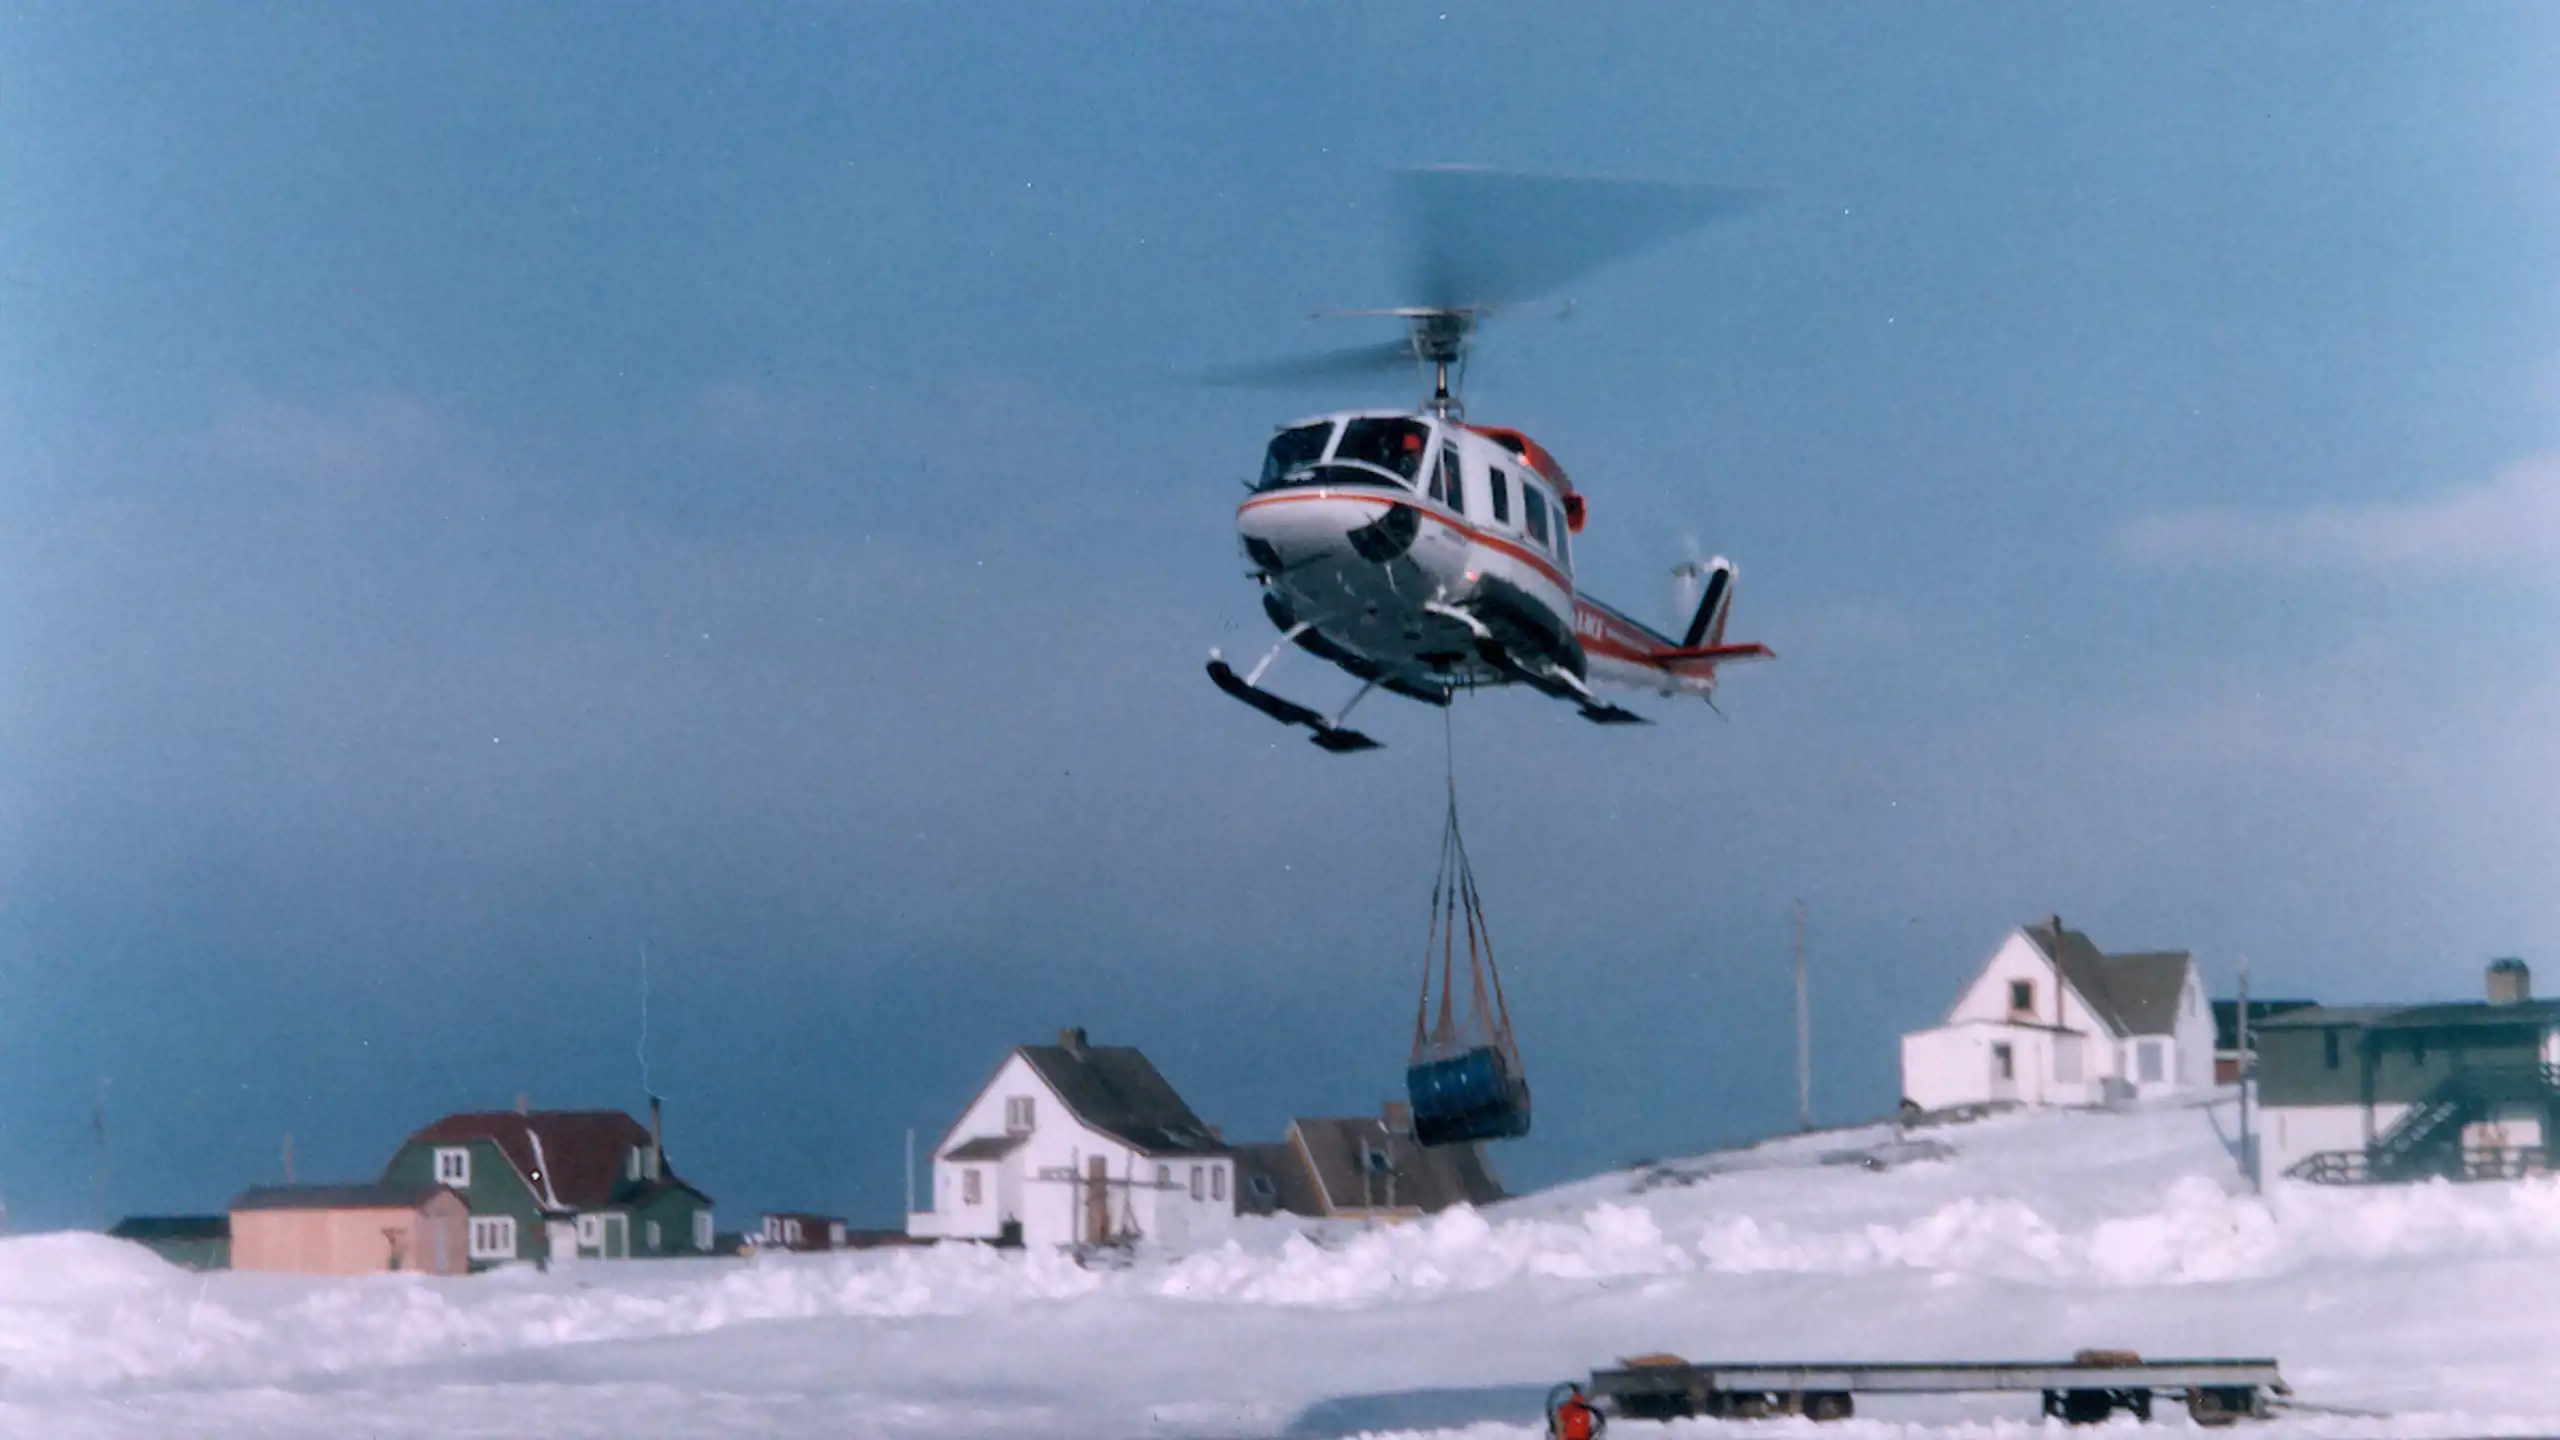 B212 i Nuuk heliport som blev lukket i 1979 efter åbningen af landingsbanen 